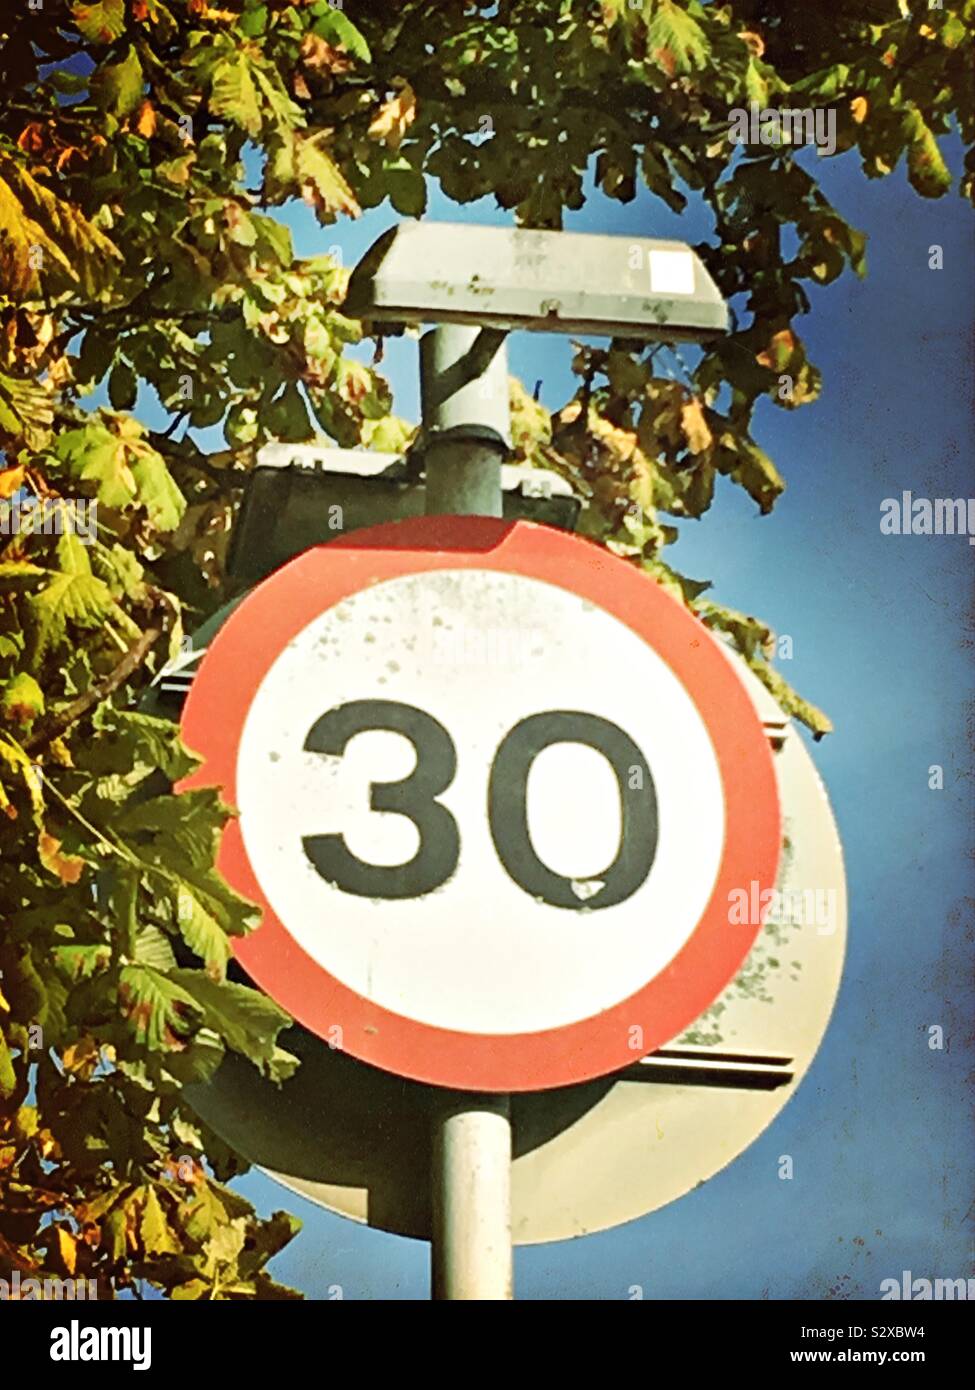 Un panneau de circulation routière britannique circulaire donnant une limite de vitesse de 30 milles à l'heure, avec les feuilles d'automne sur un arbre. Banque D'Images